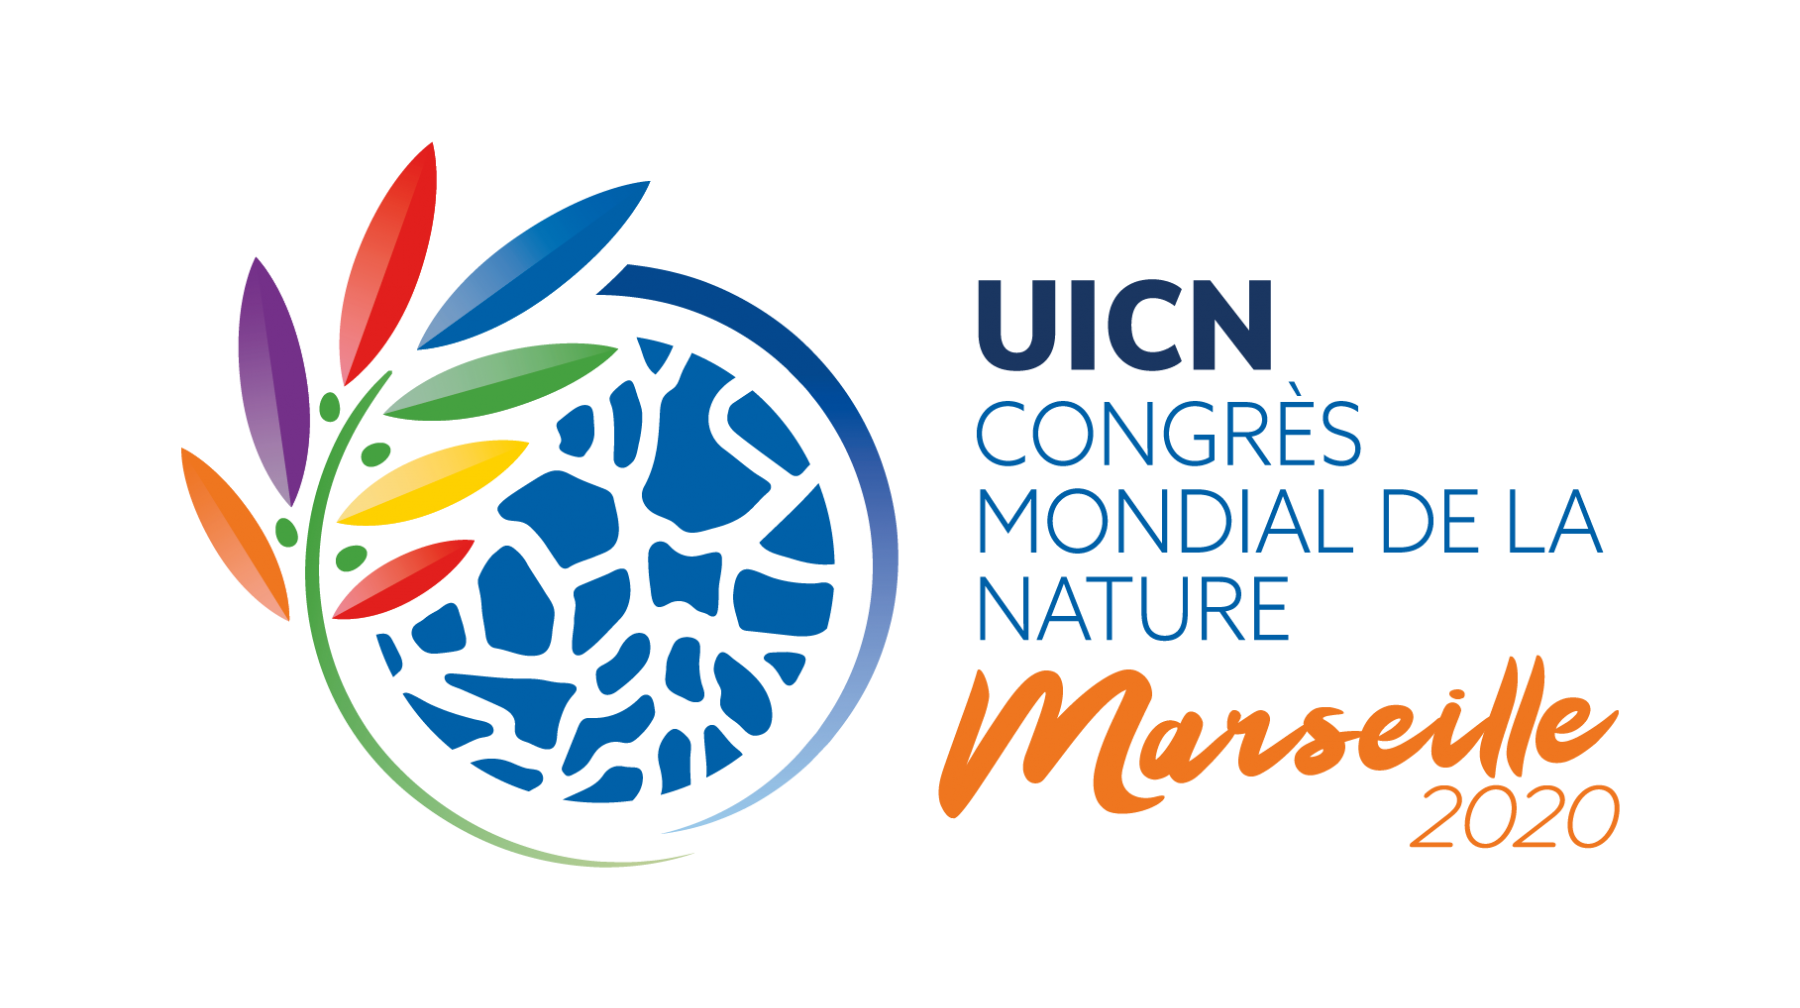 UICN Congrès mondial de la nature Marseille 2020